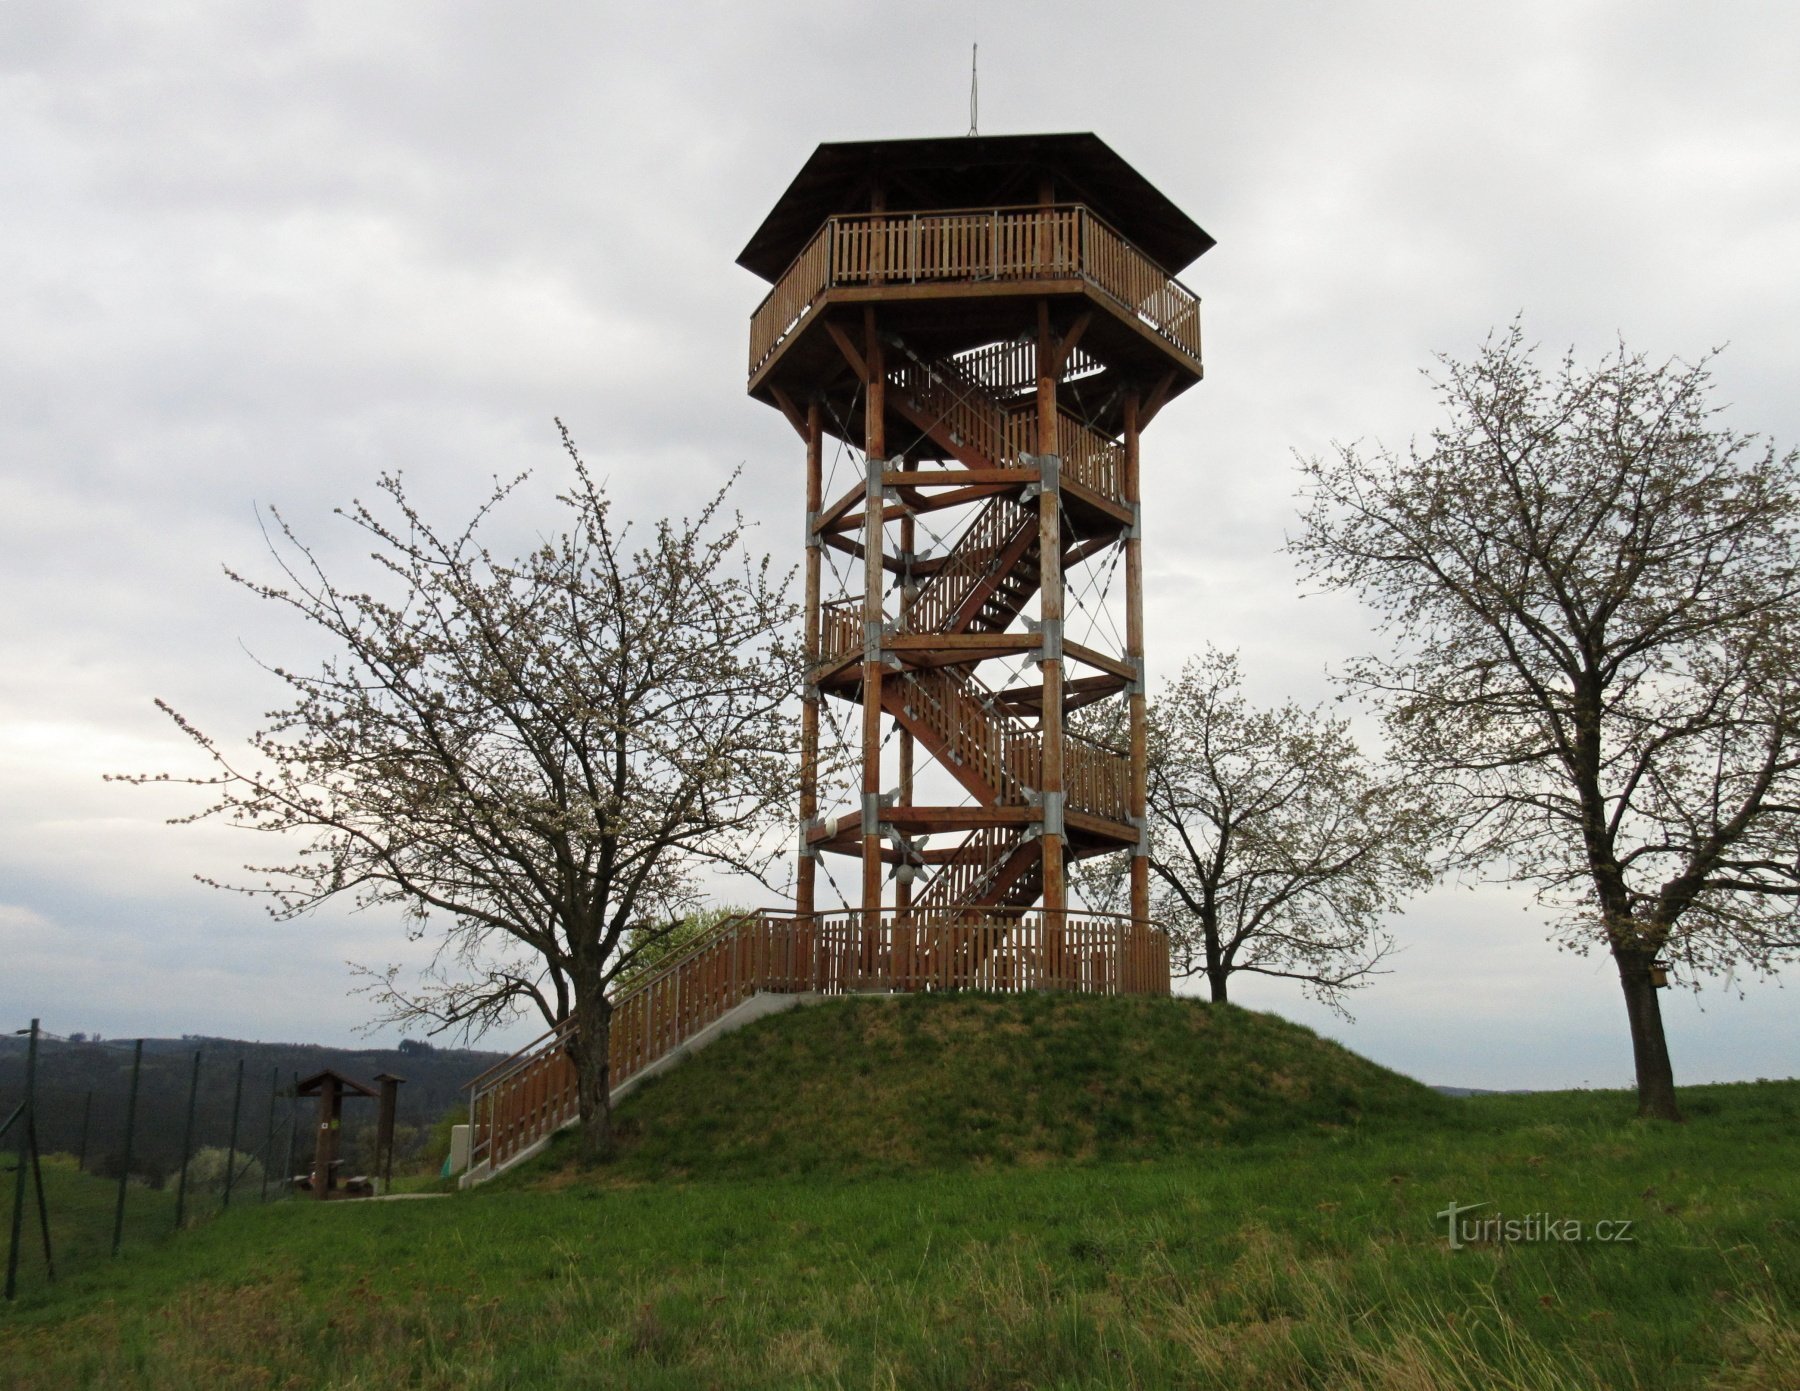 Žernovník - villaggio e torre di avvistamento